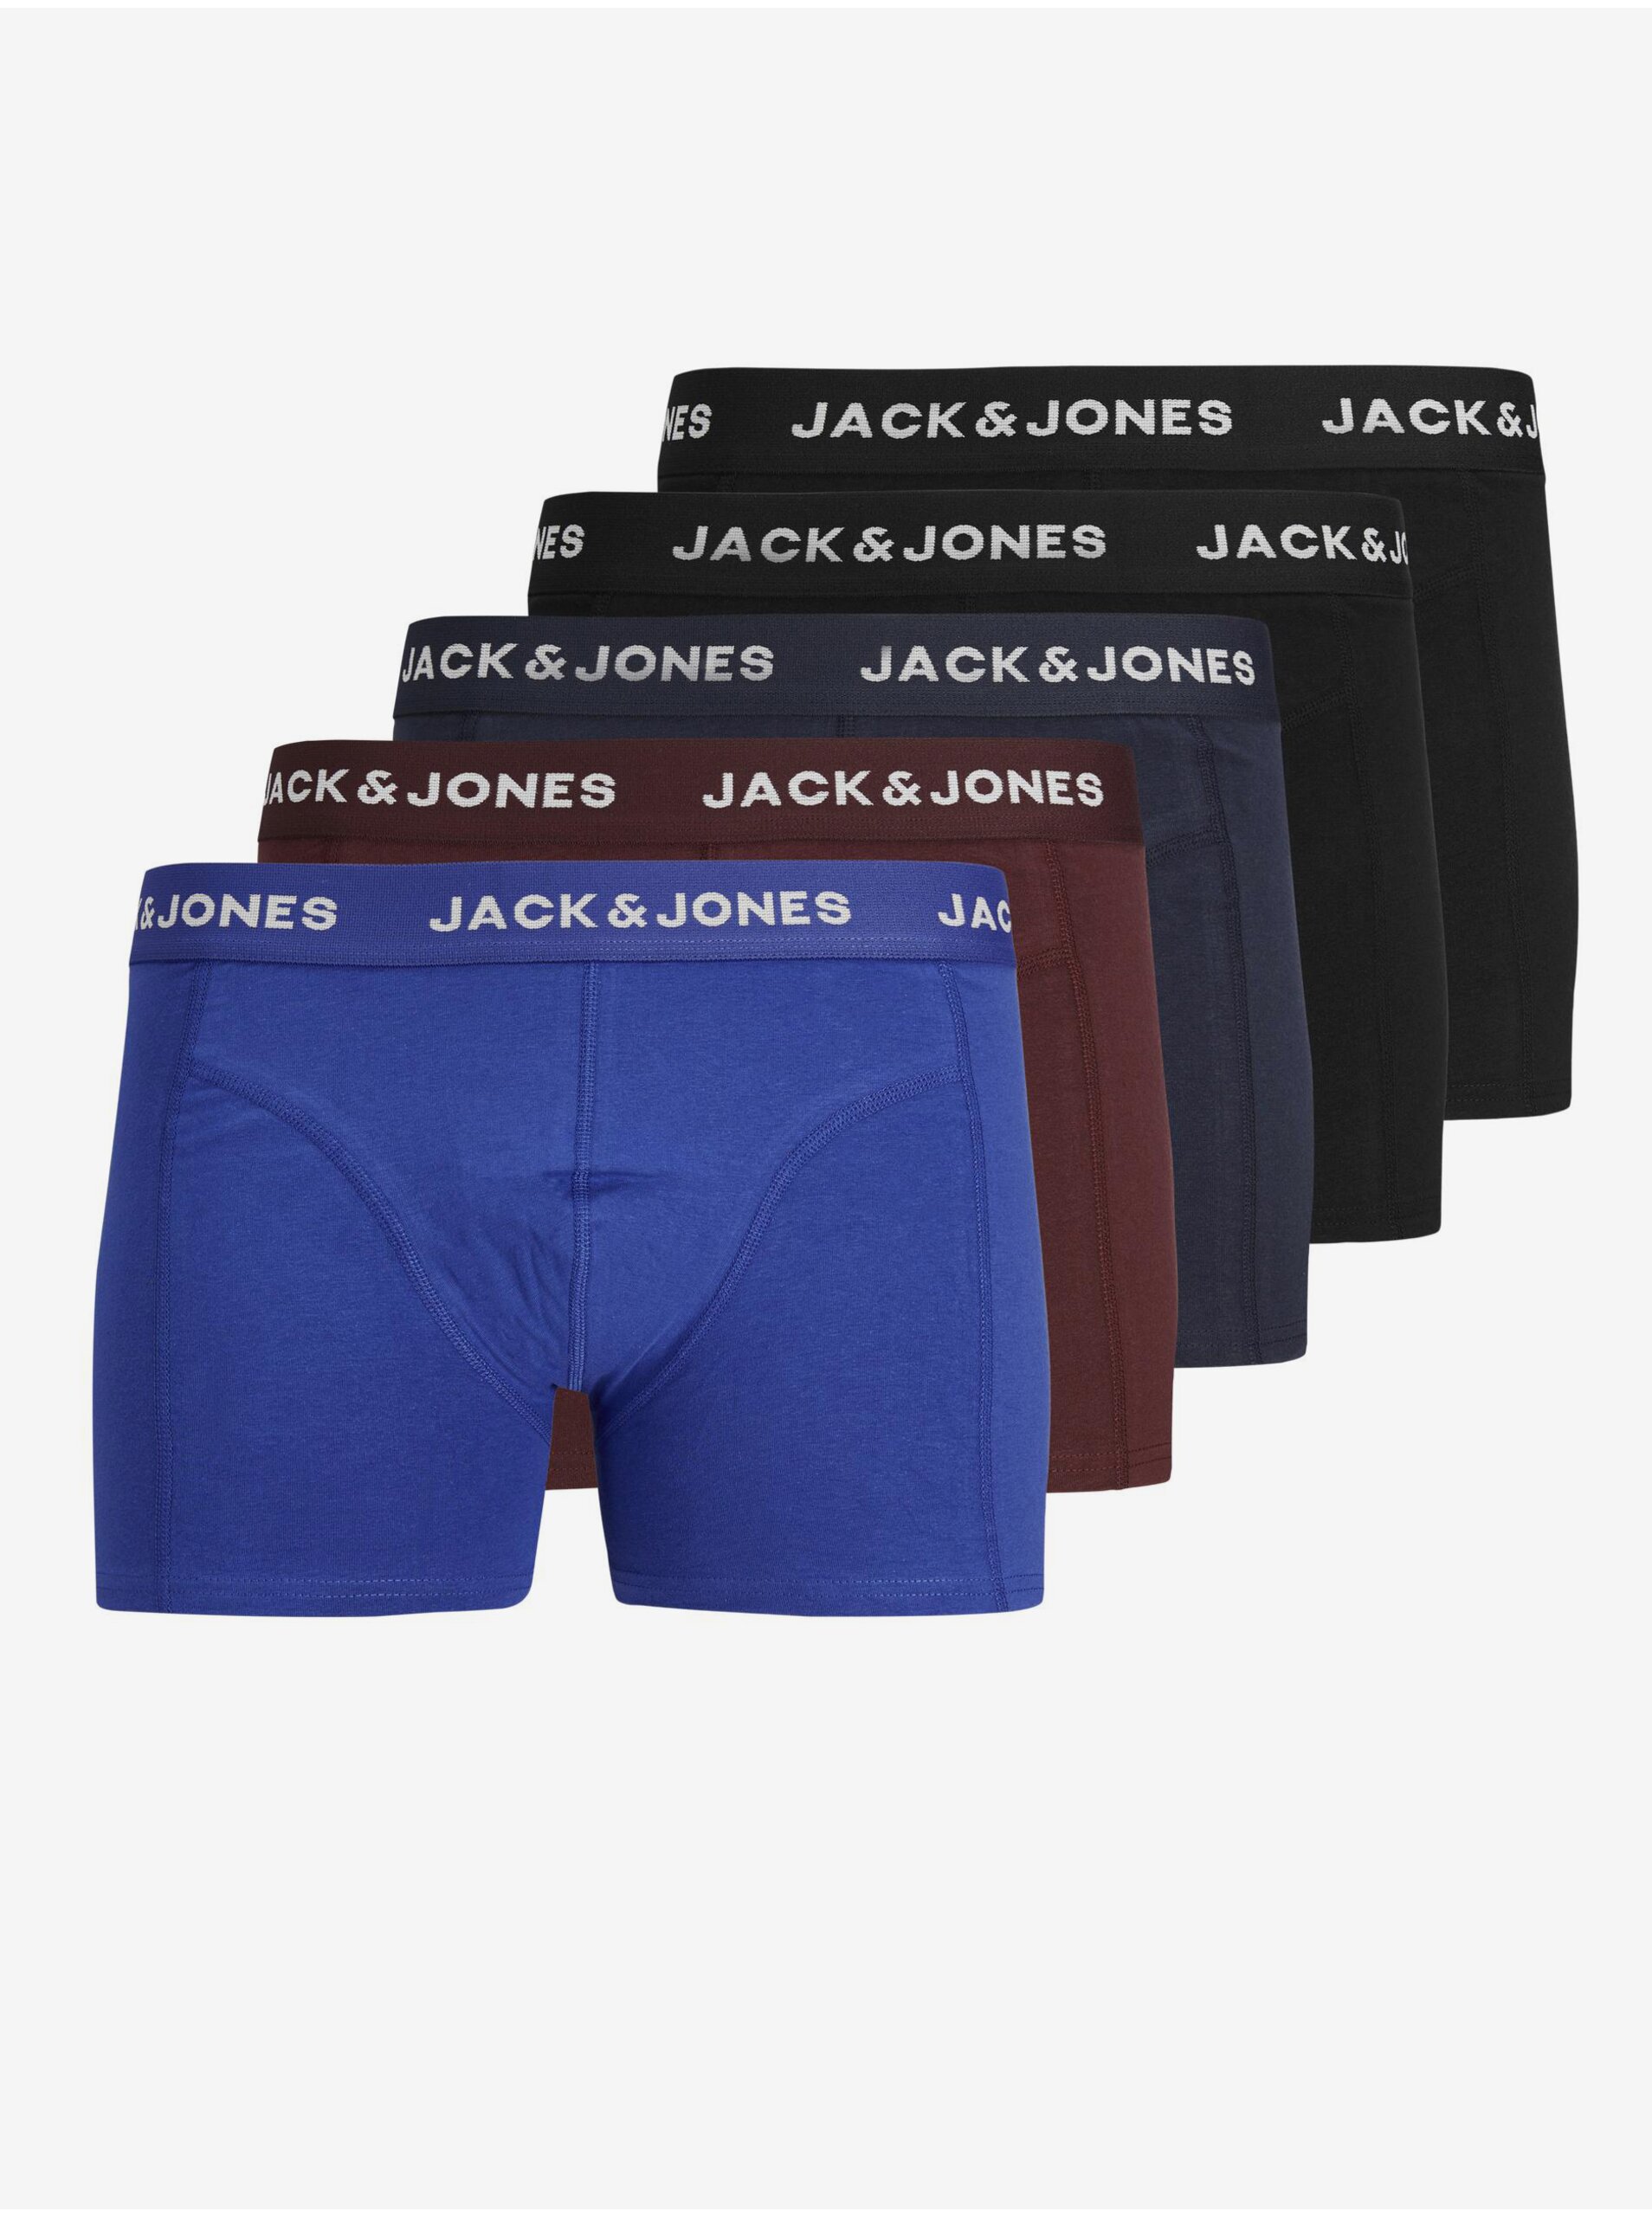 Jack & Jones Set of five men's boxer shorts in blue, brown and black Jack & J - Men